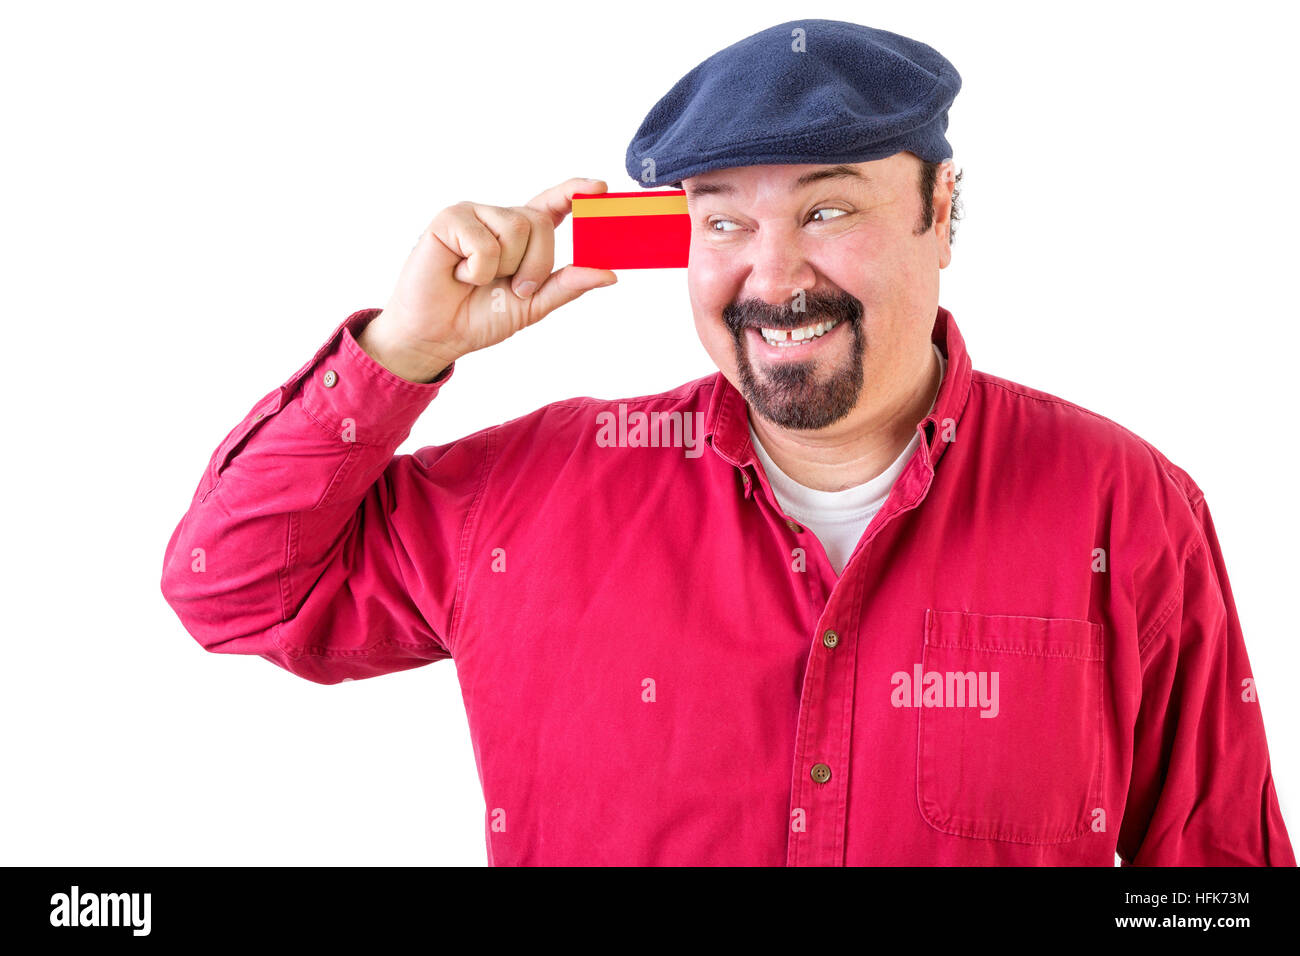 Fröhlichen Mann betrachtete seine Kreditkarte mit einem strahlenden Lächeln der Vorfreude, wie er all die Dinge vorstellt, die er kann gehen und kaufen, Oberkörper in ein rotes Hemd Stockfoto